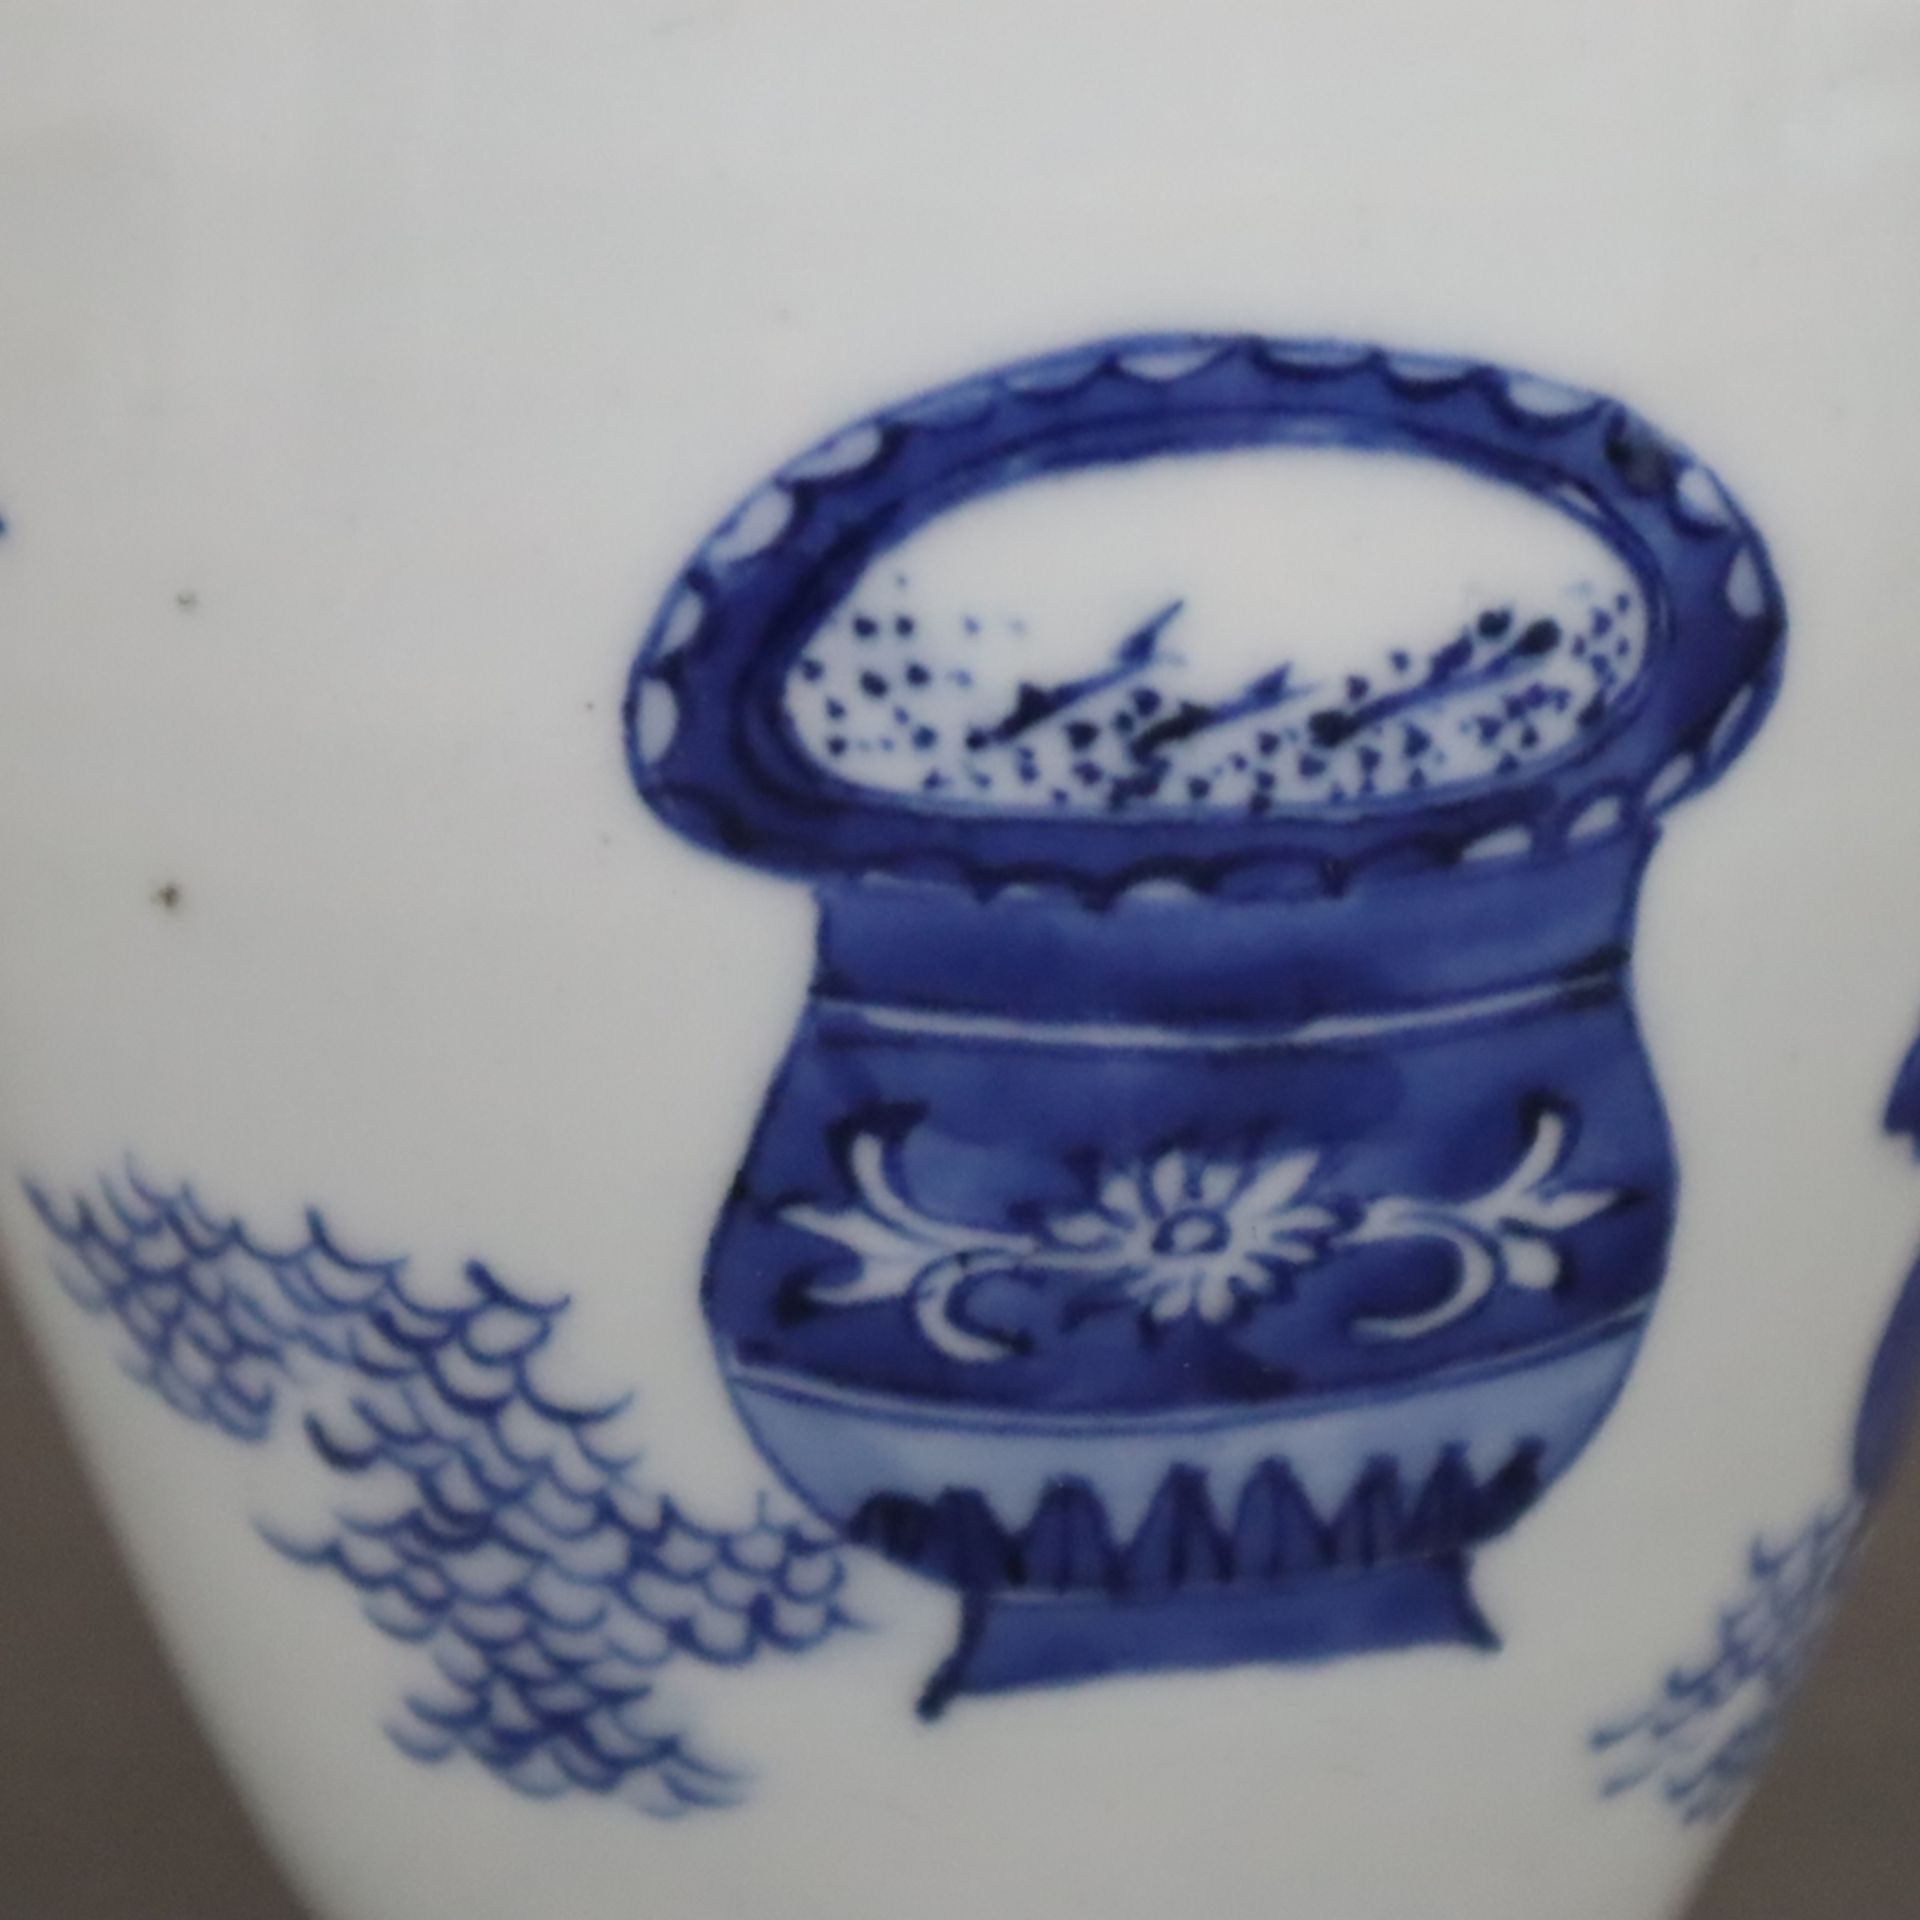 Blau-weiße Vase - China, Qing-Dynastie, Porzellan, ovoide Form, umlaufend in Unterglasurblau bemalt - Image 7 of 8